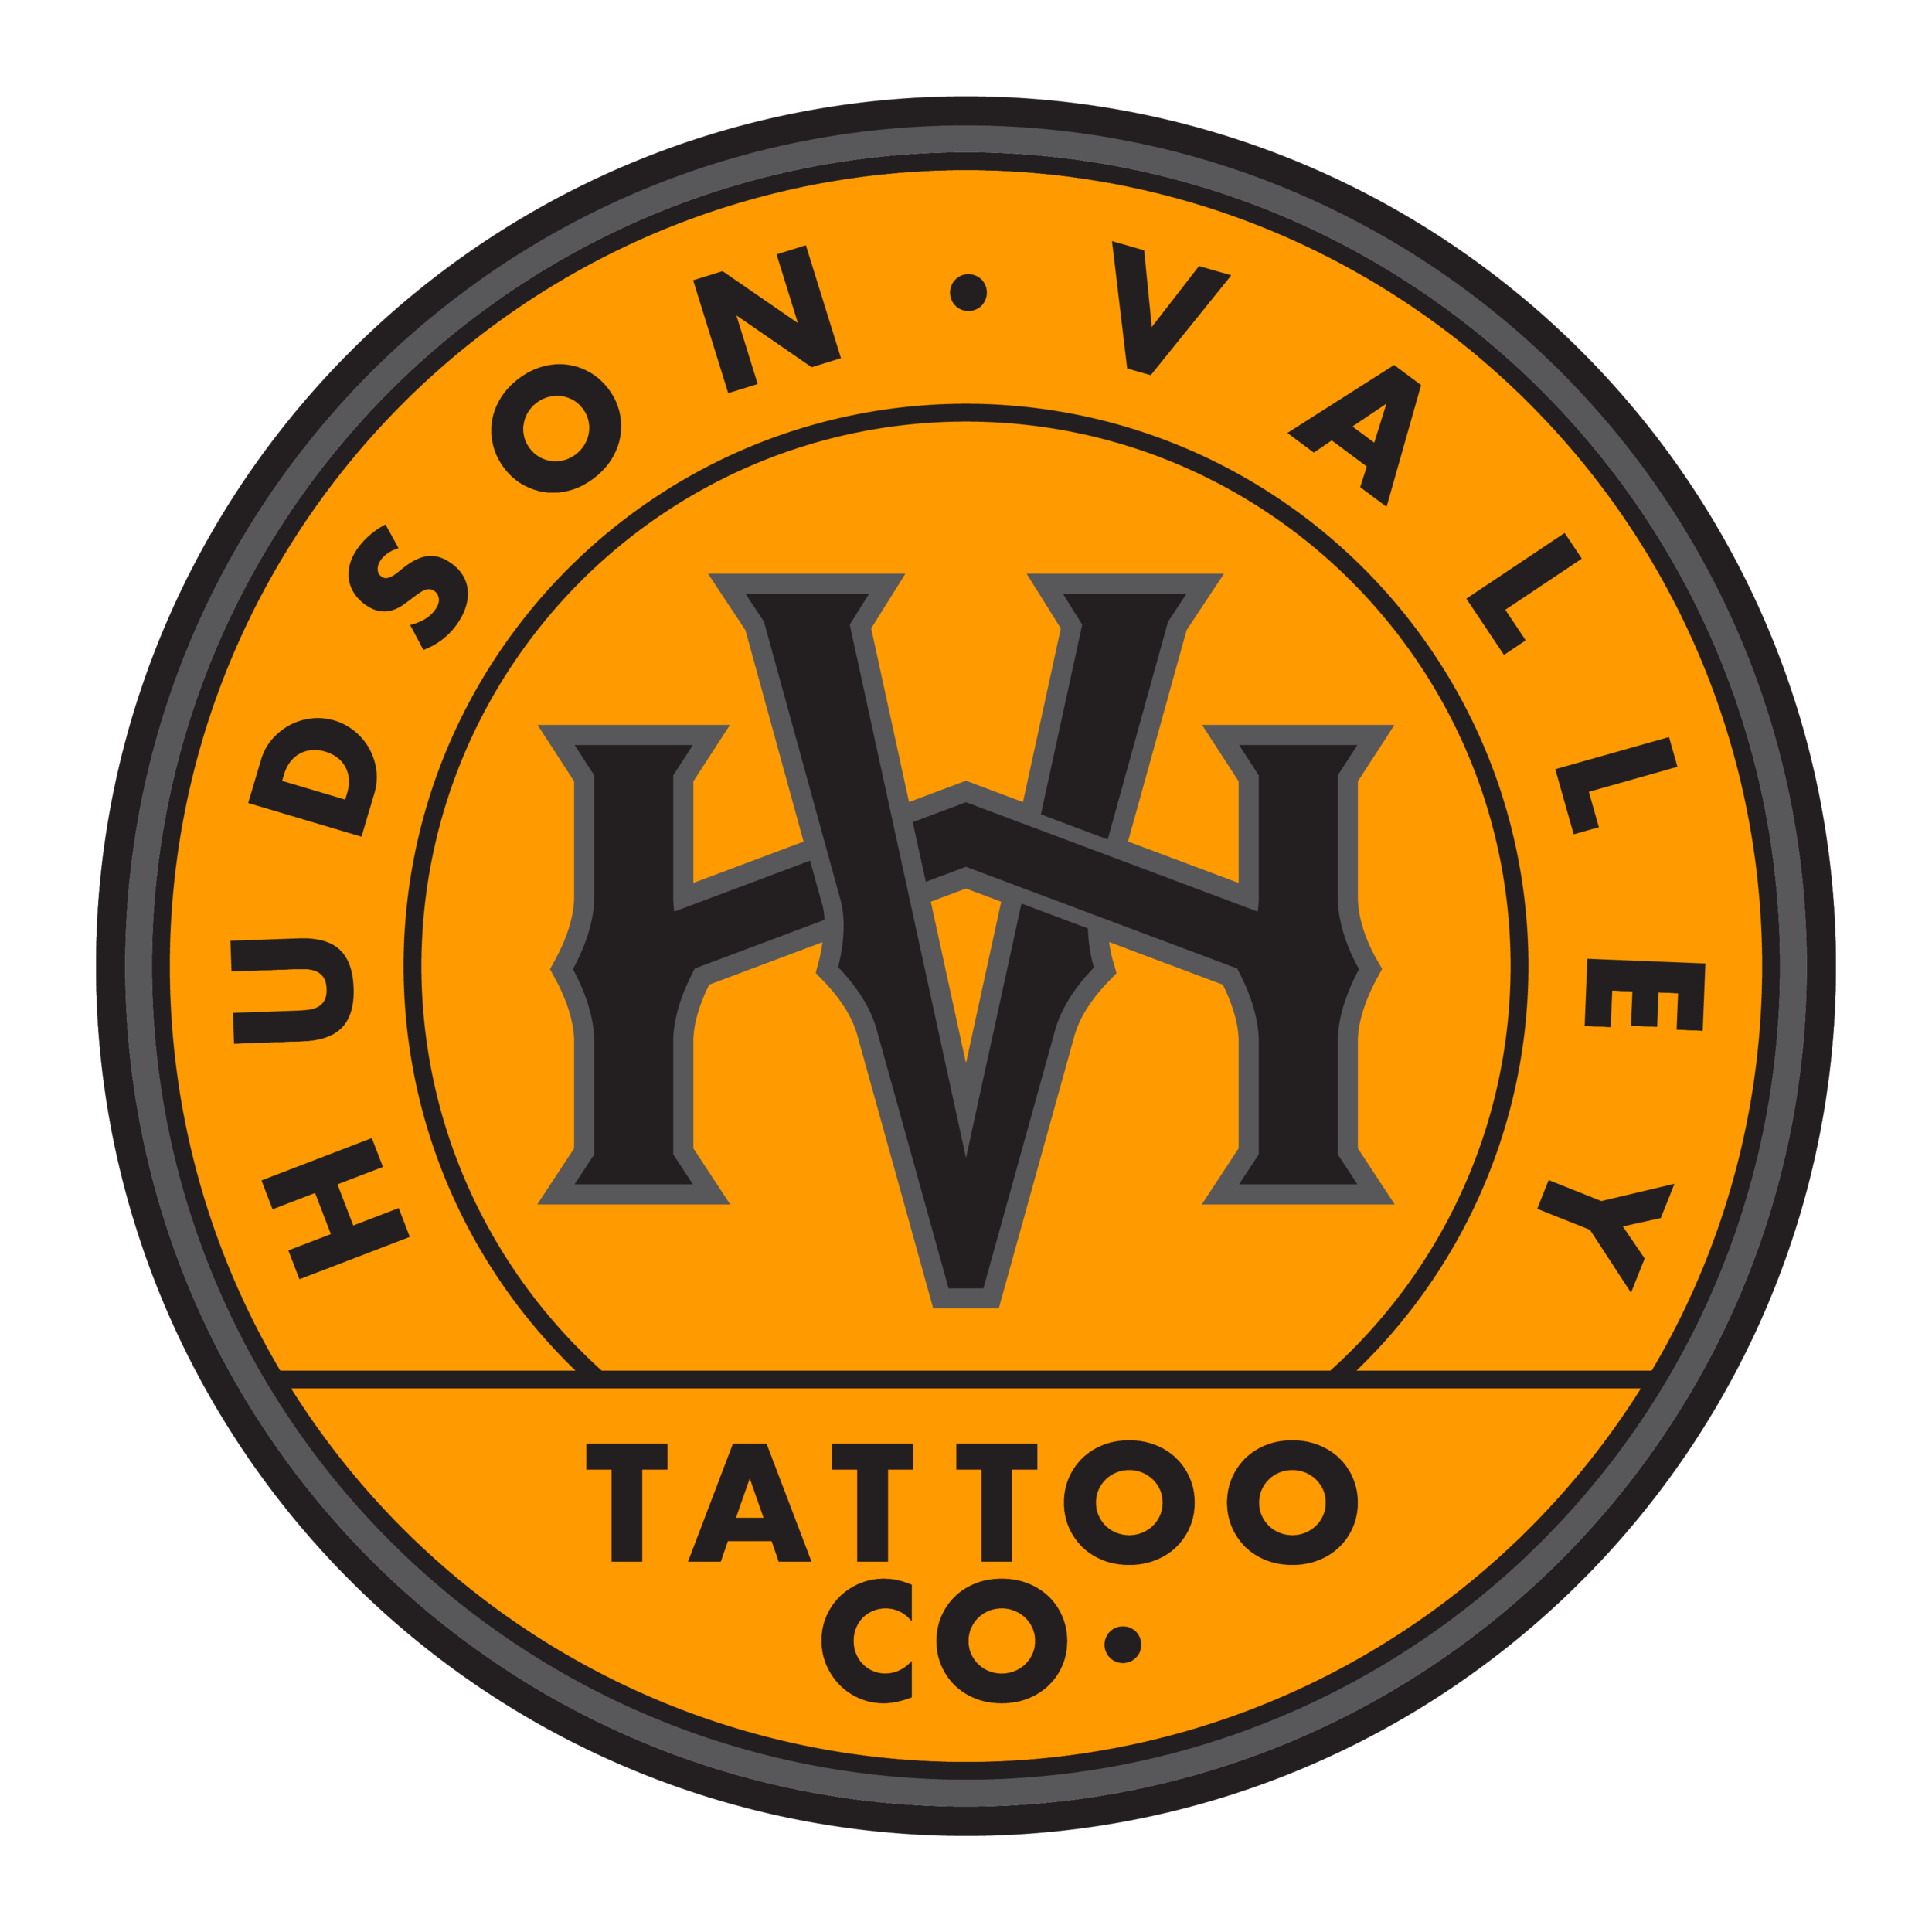 Hudson Valley Tattoo Company